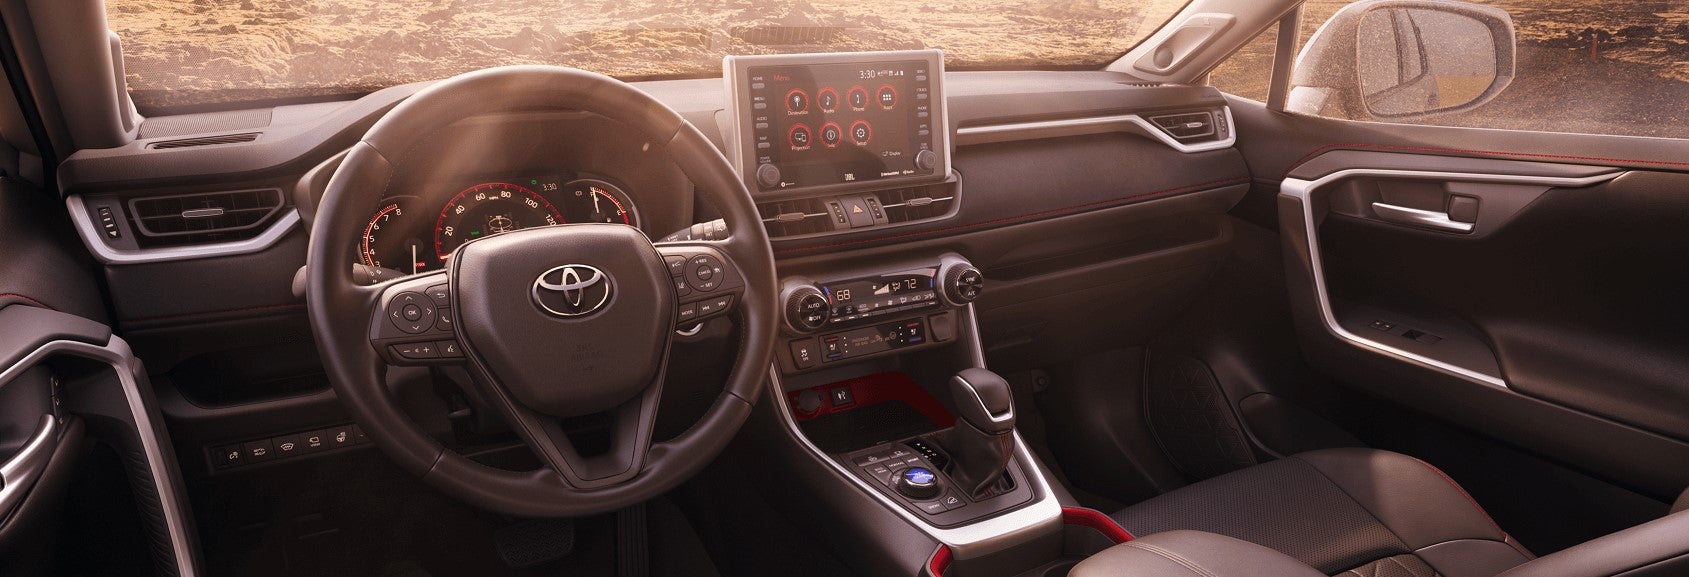 2020 Toyota RAV4 Review